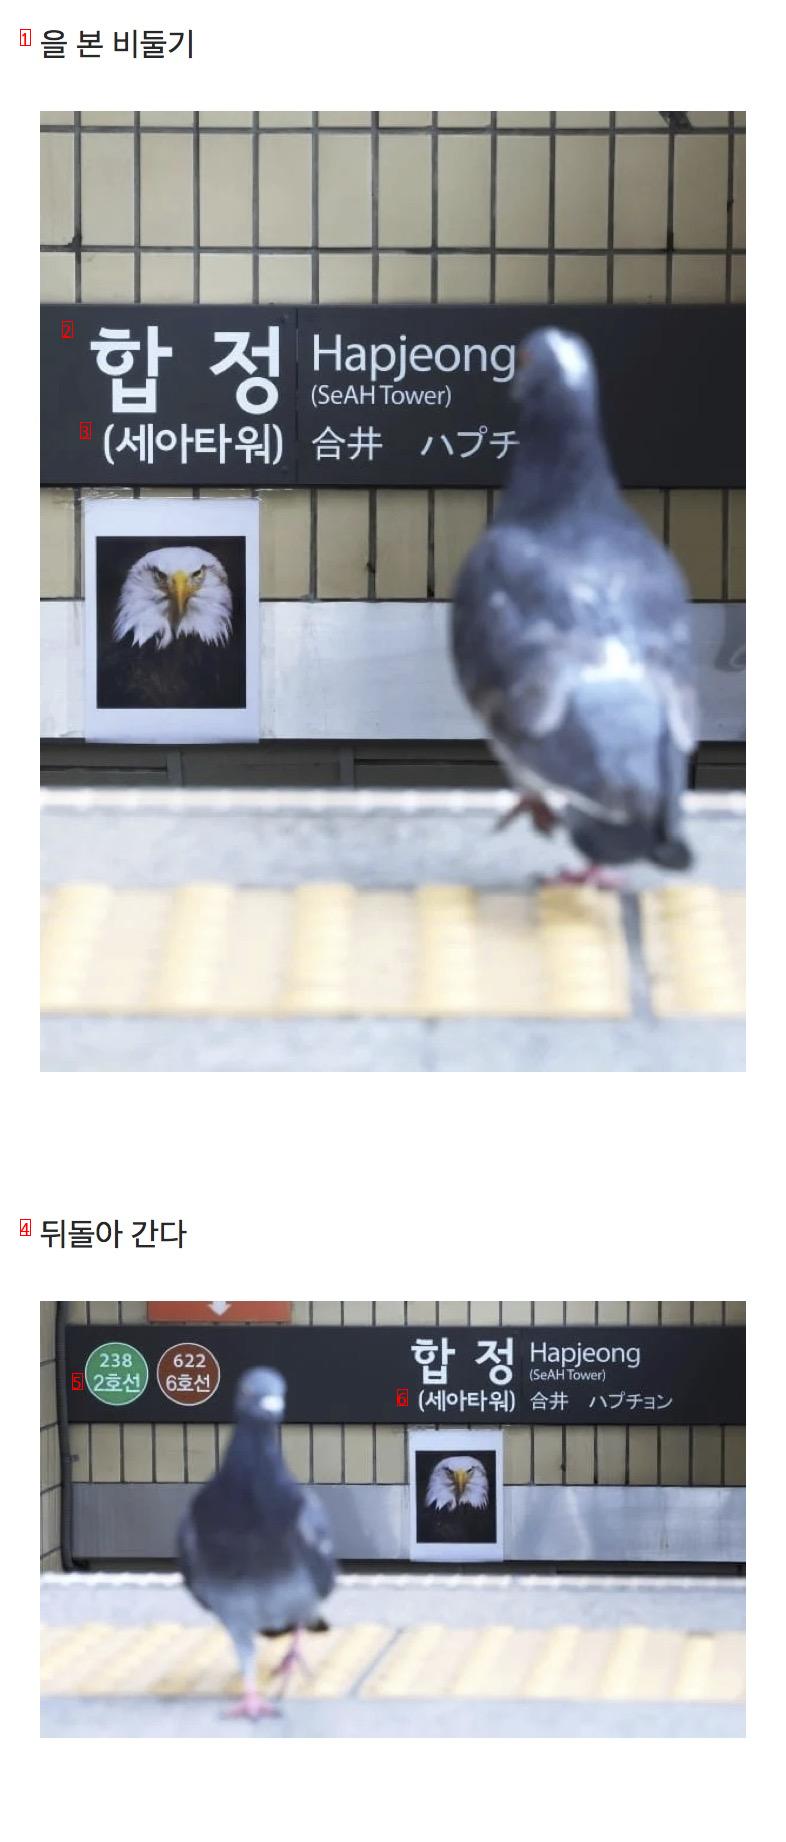 合井駅の鷲の写真